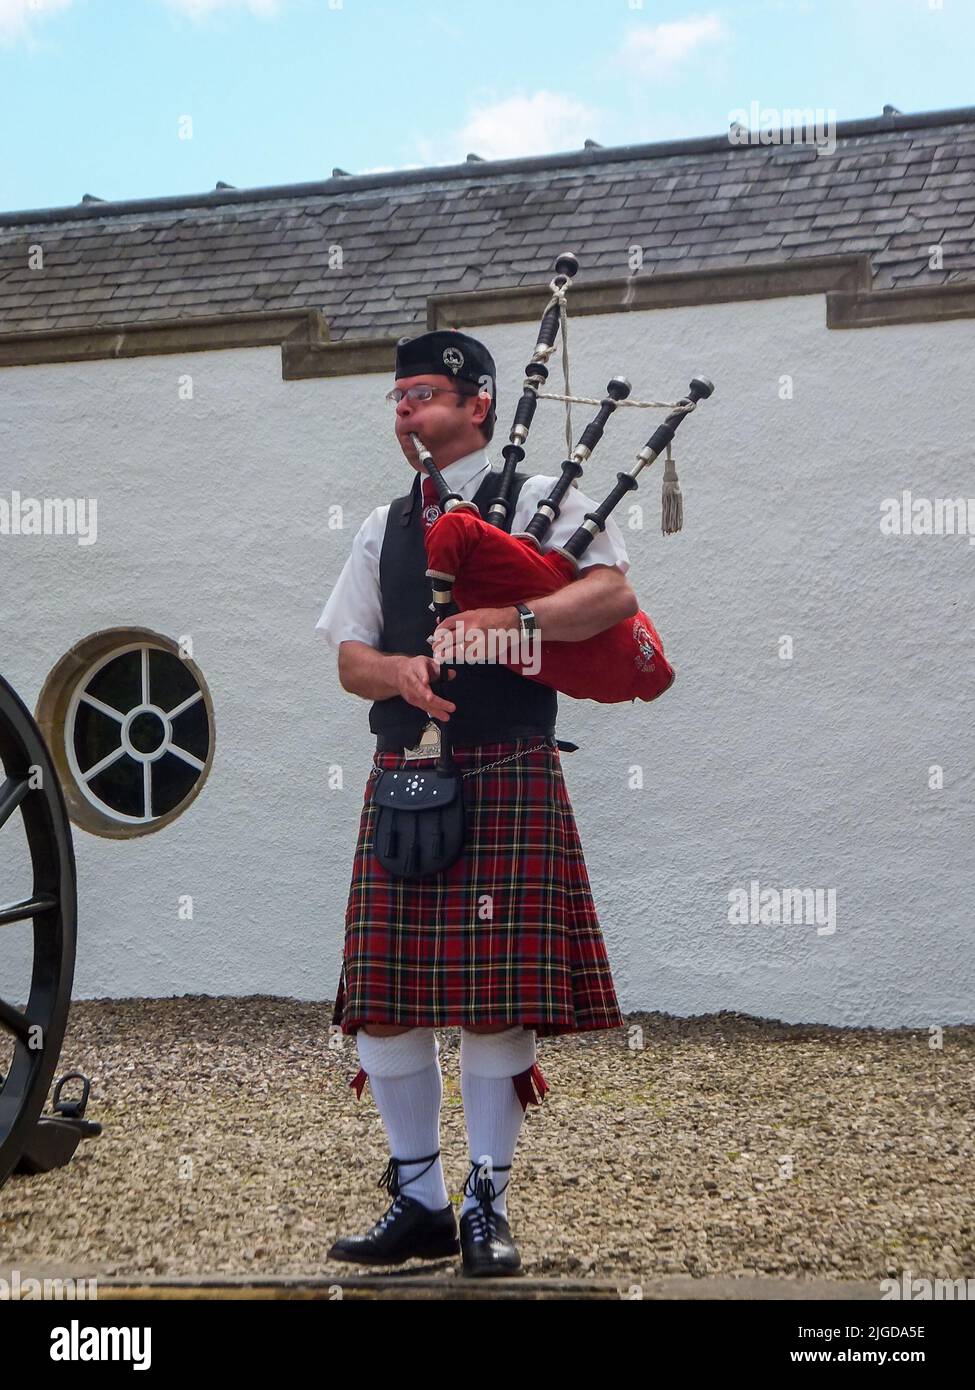 Un joueur de cornemuse en uniforme joue des cornemuses au château de Blair à Pitlochry, dans le Perthshire, en Écosse, au Royaume-Uni. Banque D'Images